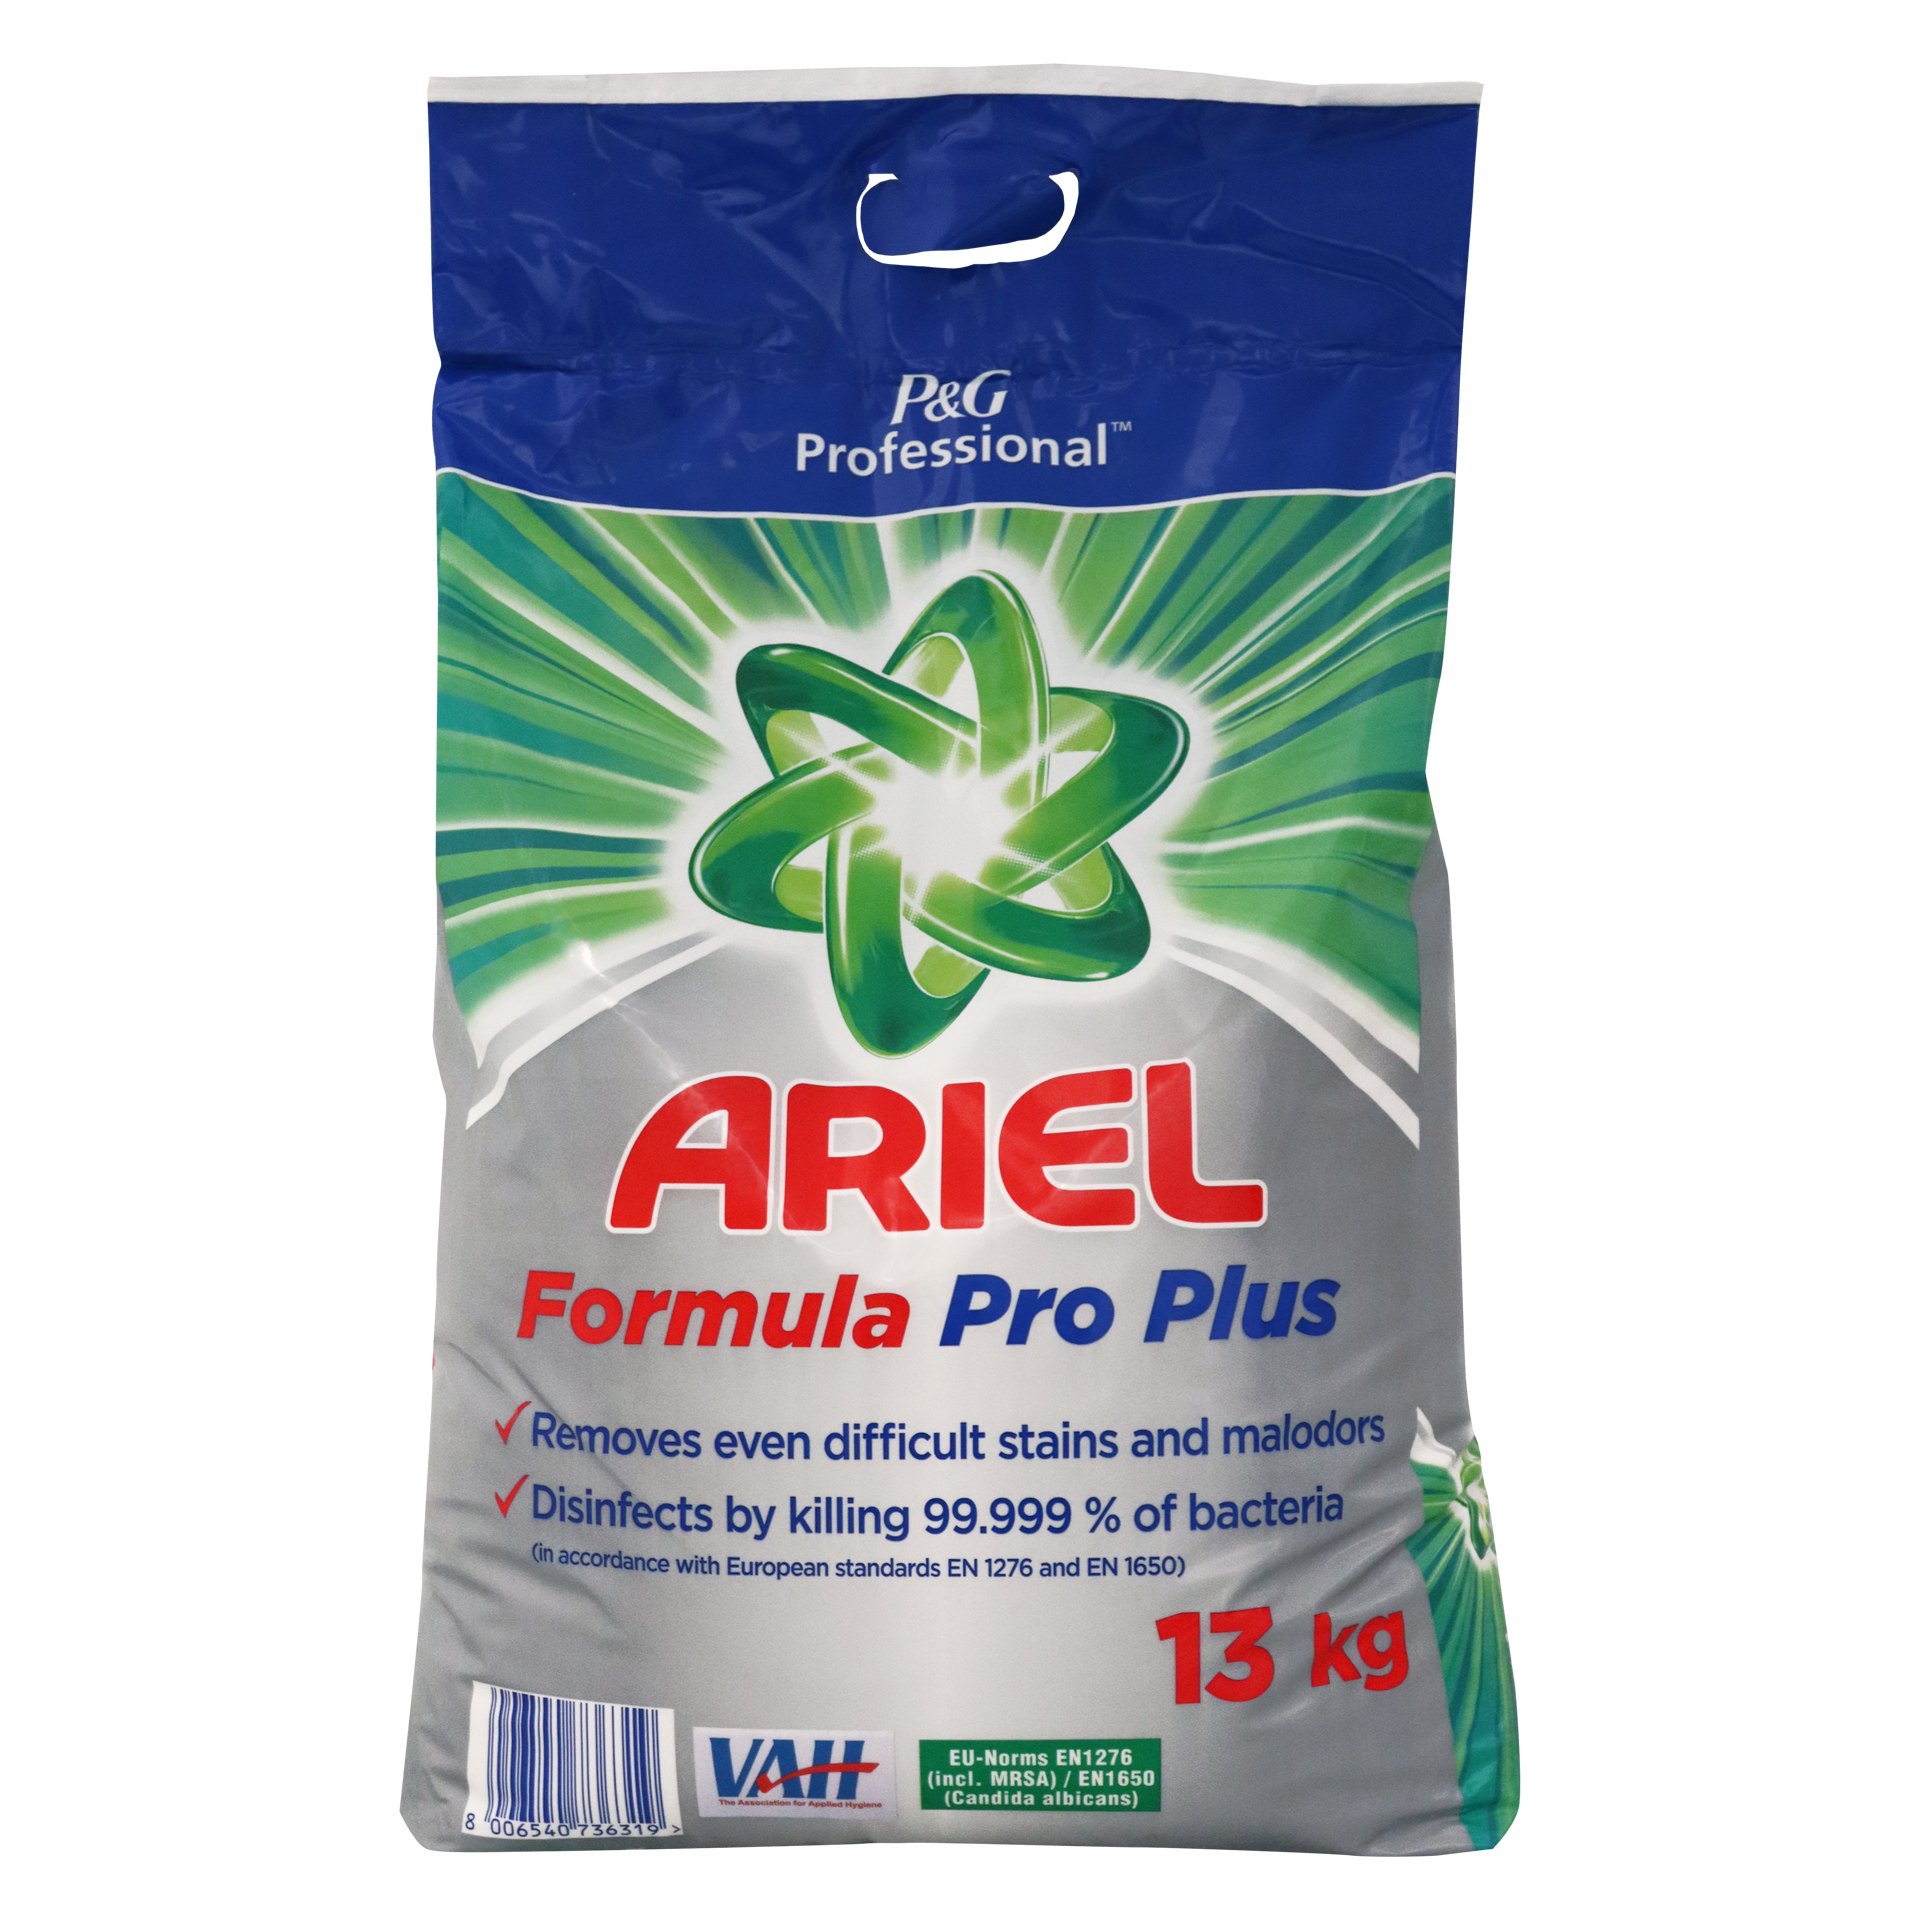 Ariel Formula Pro Plus 13kg